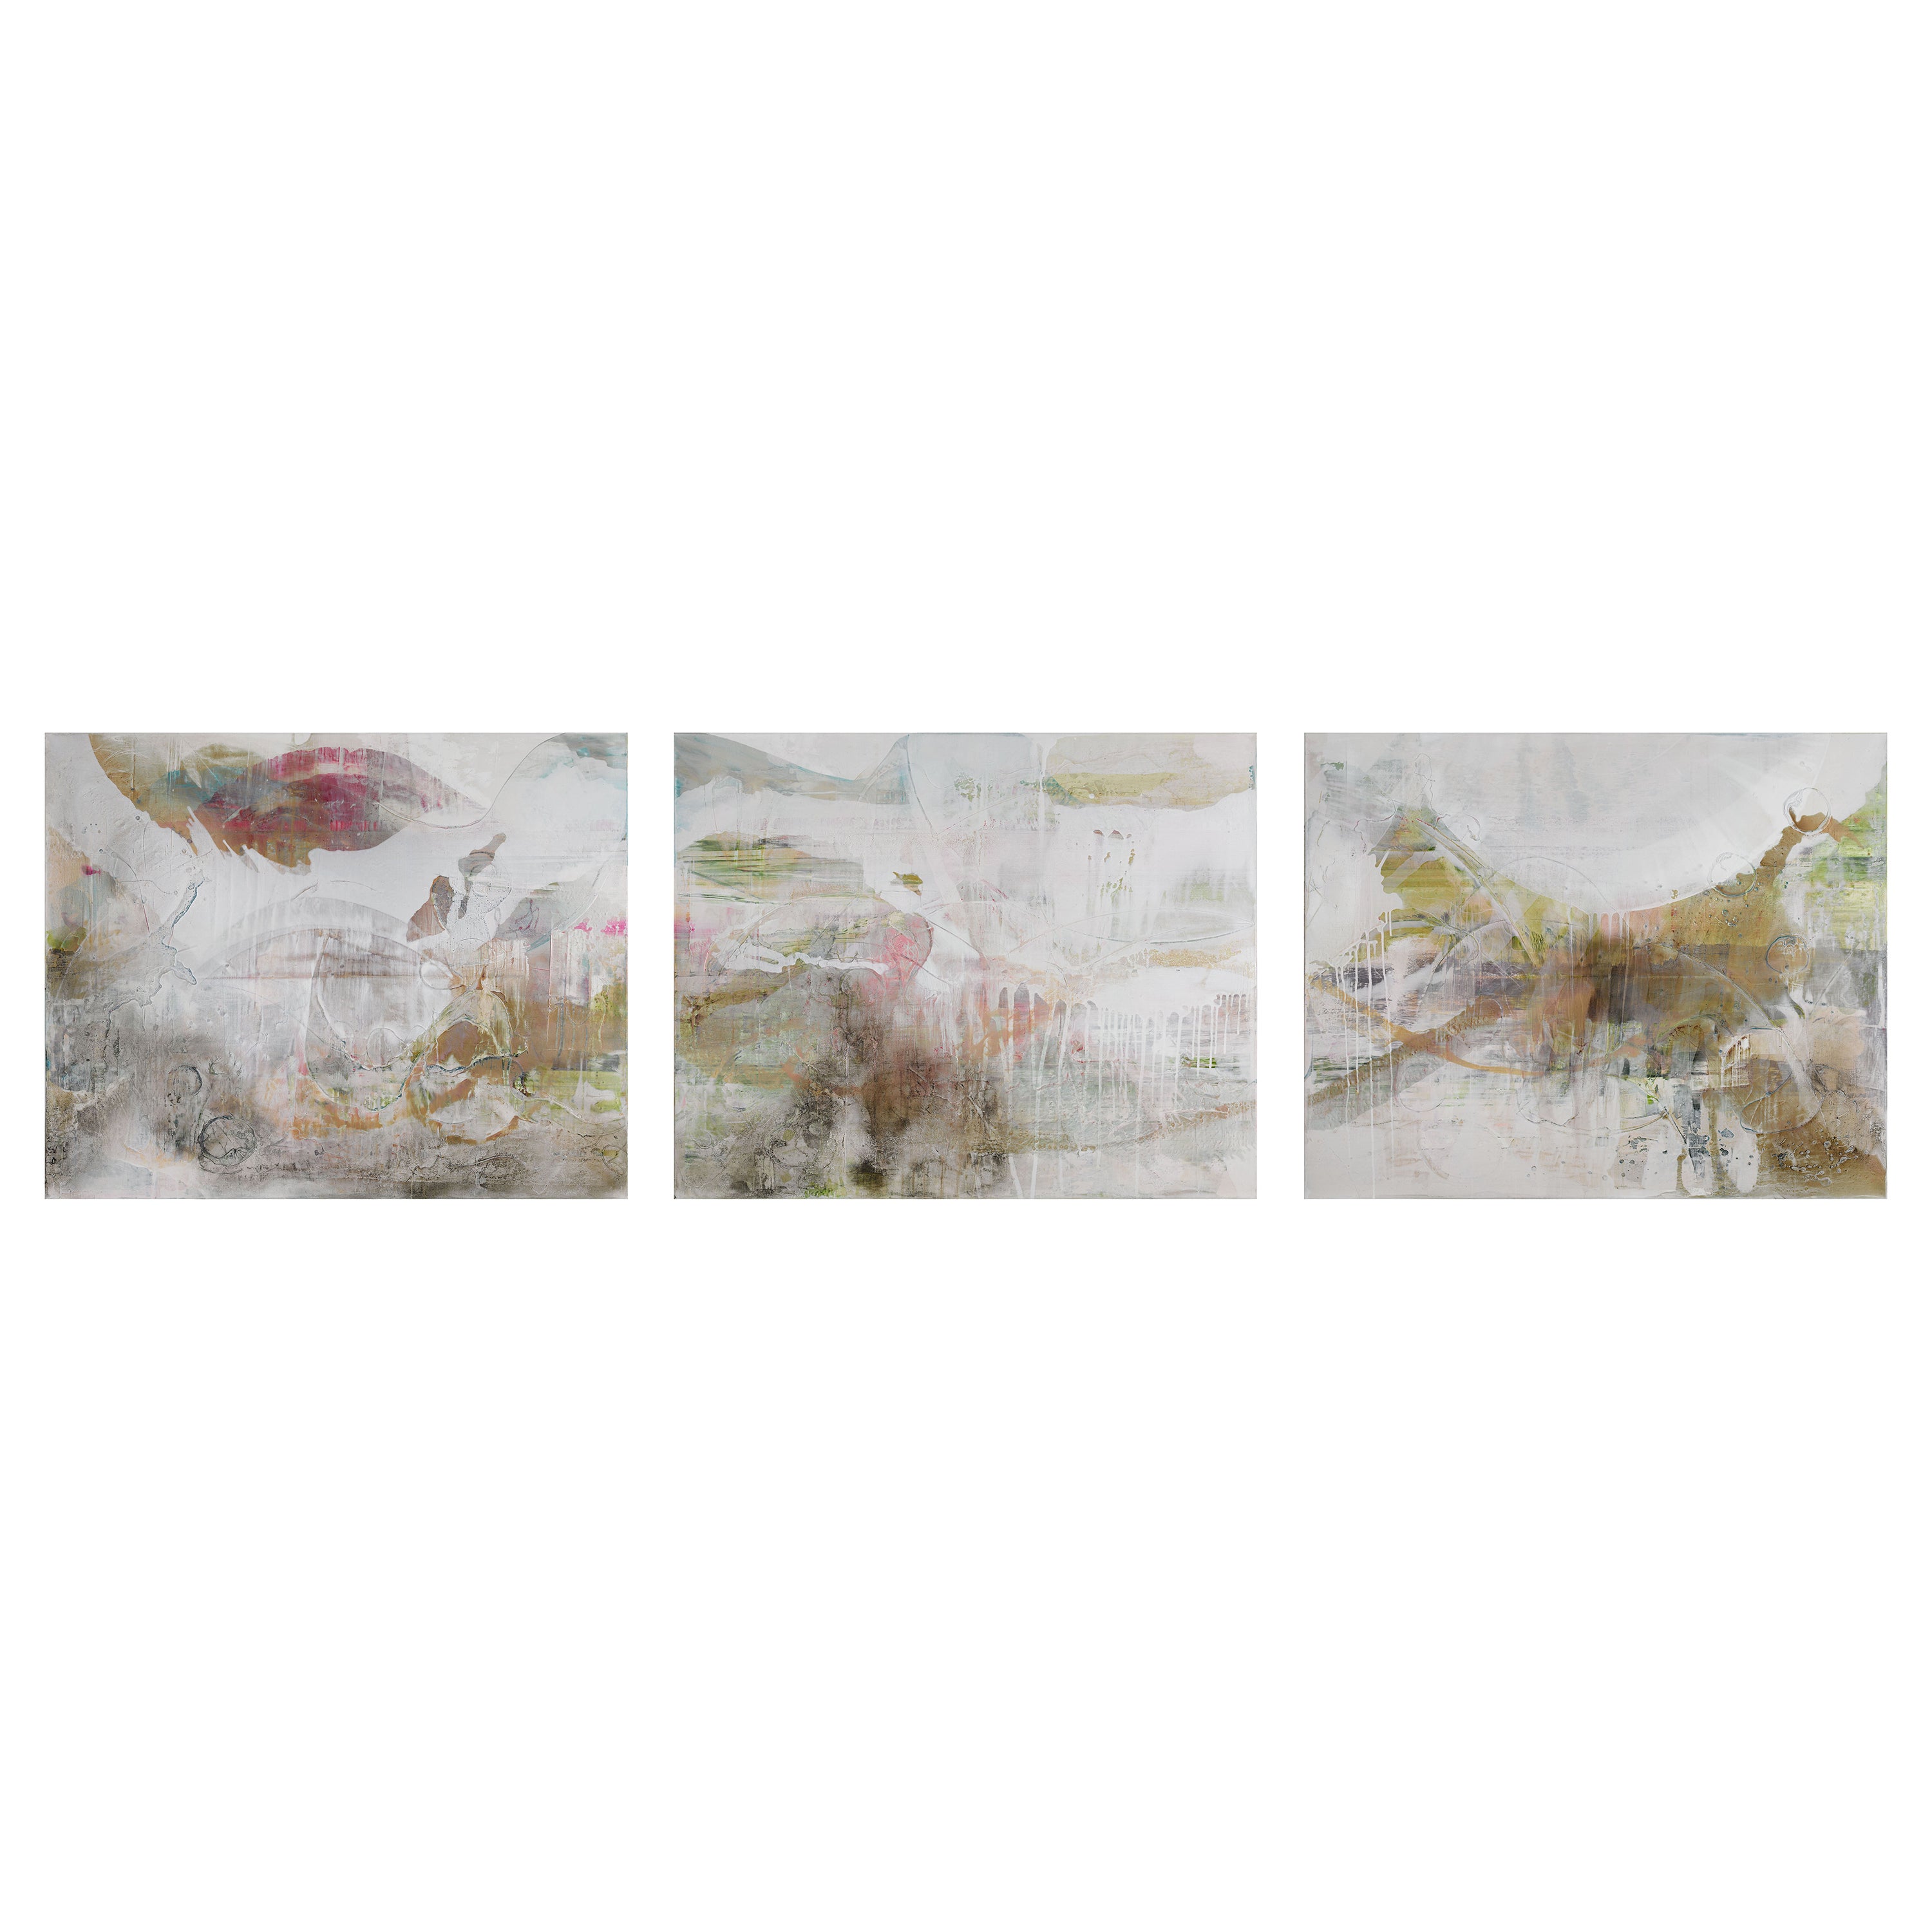 Zeitgenössisches impressionistisches Triptychon mit Farbausbrüchen vor hellem Hintergrund